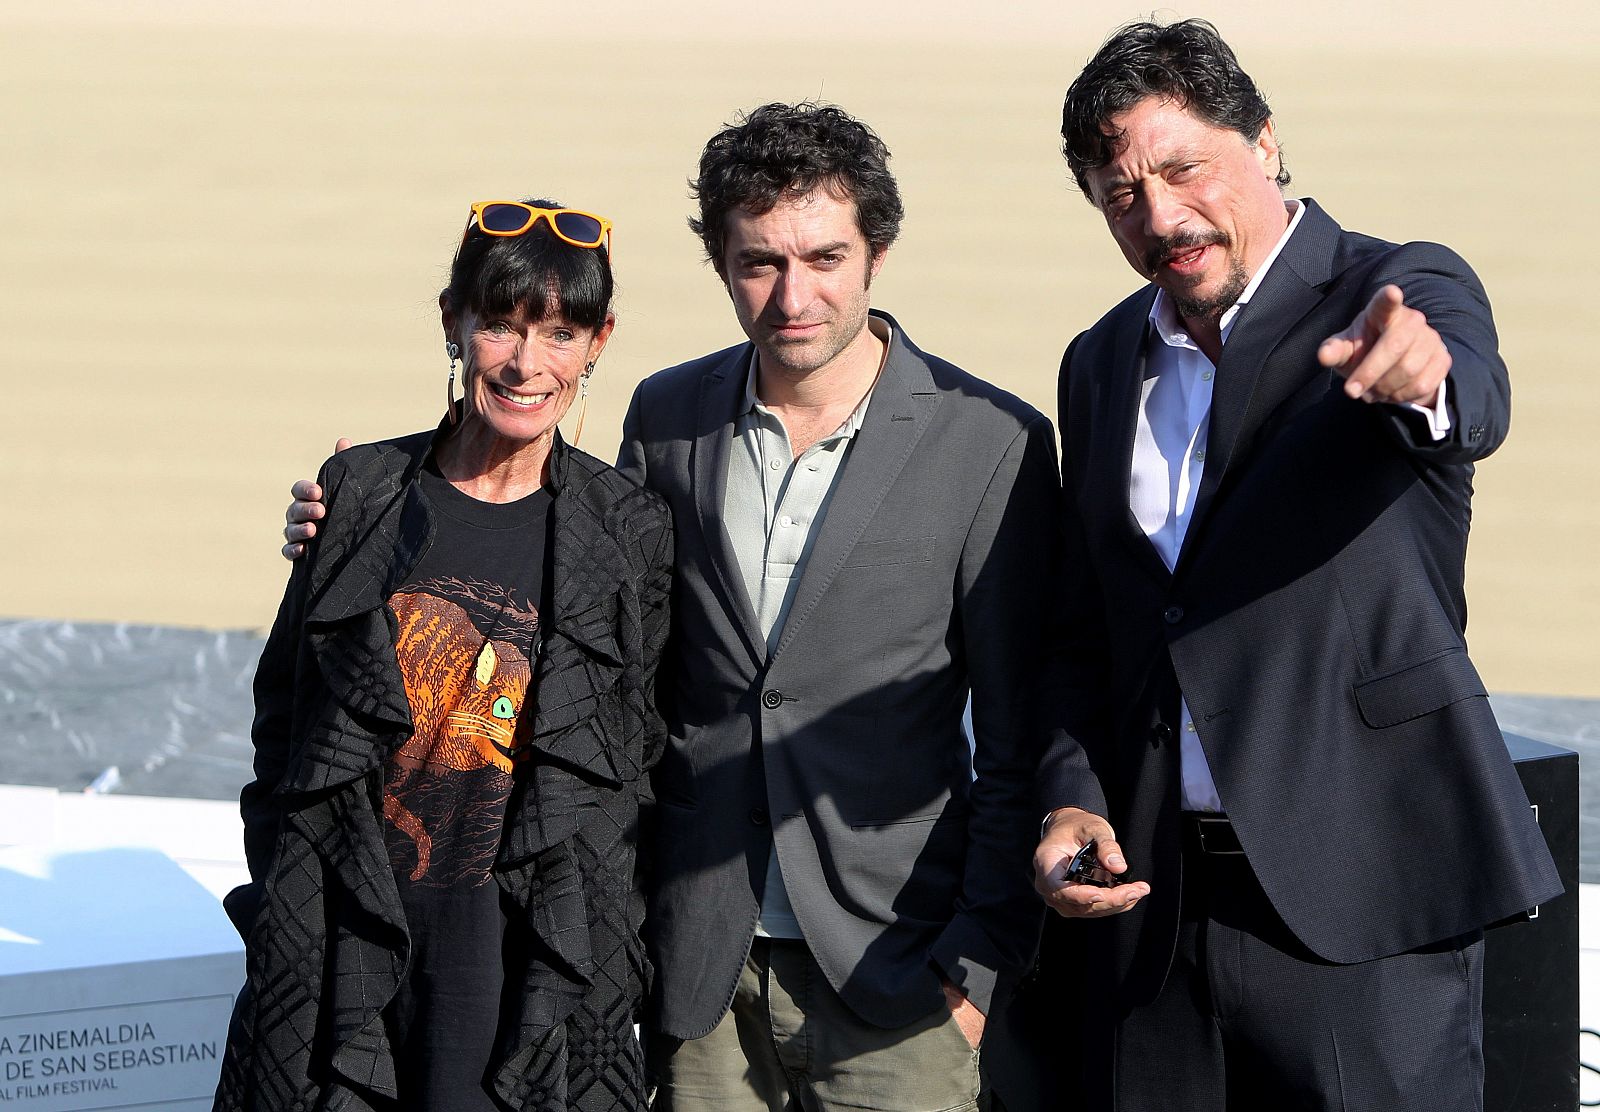 El realizador, Mathieu Demy posa junto a los actores, Géraldine Chaplin, y Carlos Bardem